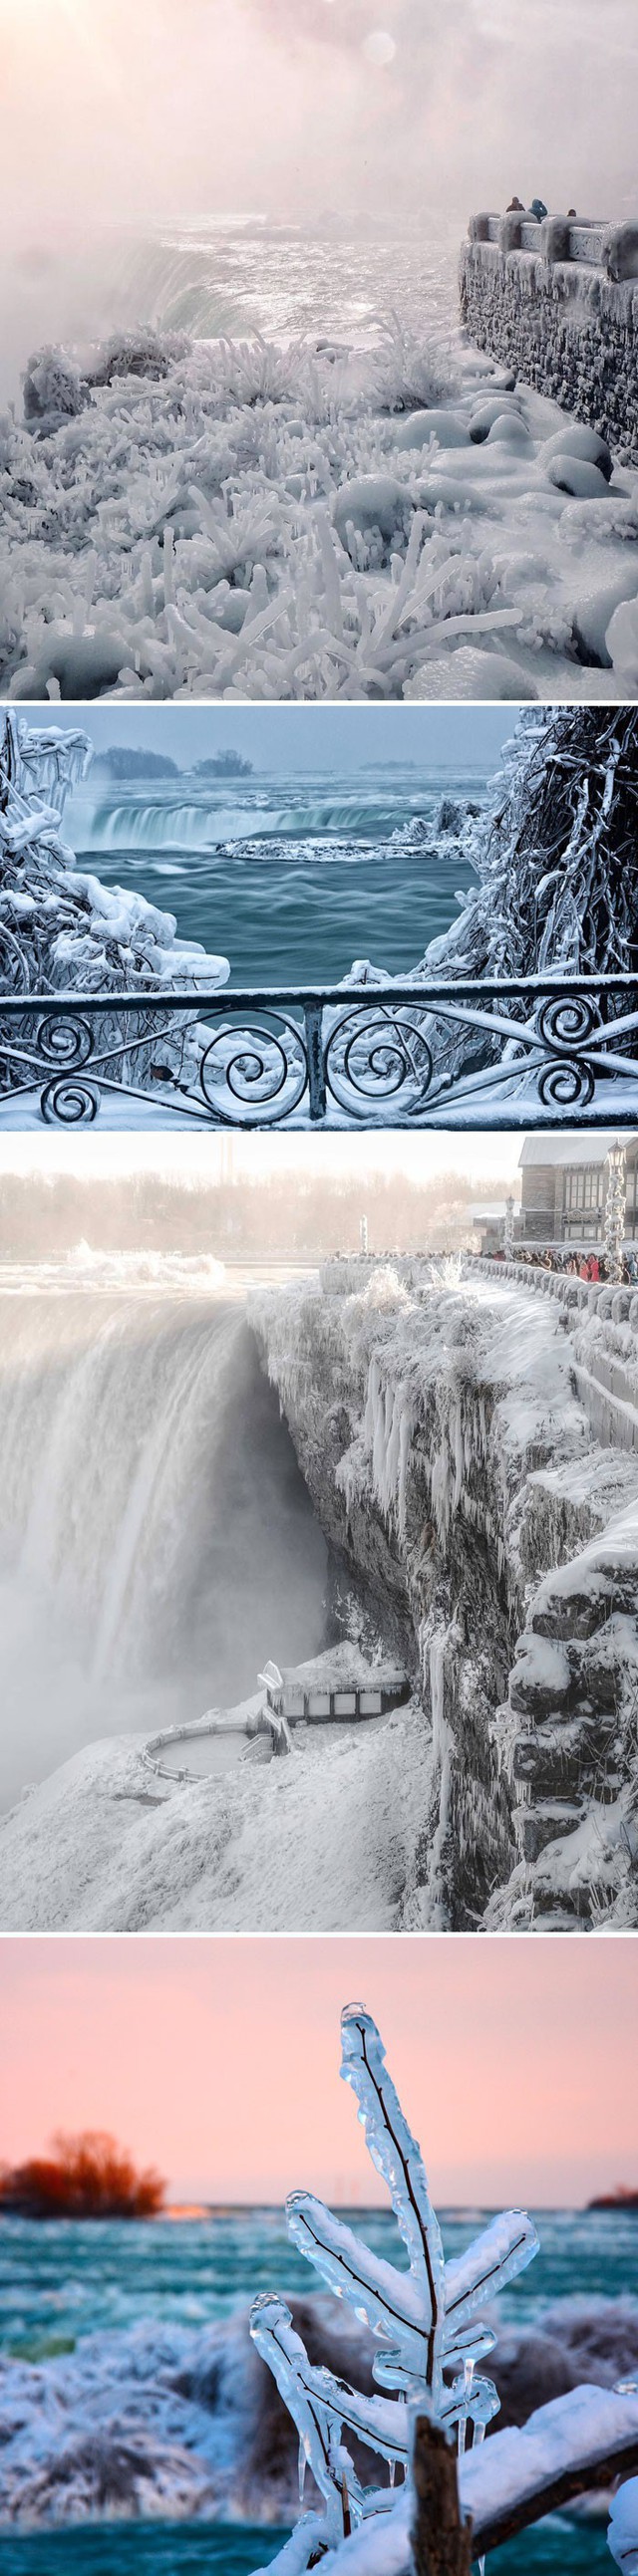 
Thác Niagara đã trở thành một dòng sông băng thượng cổ.
